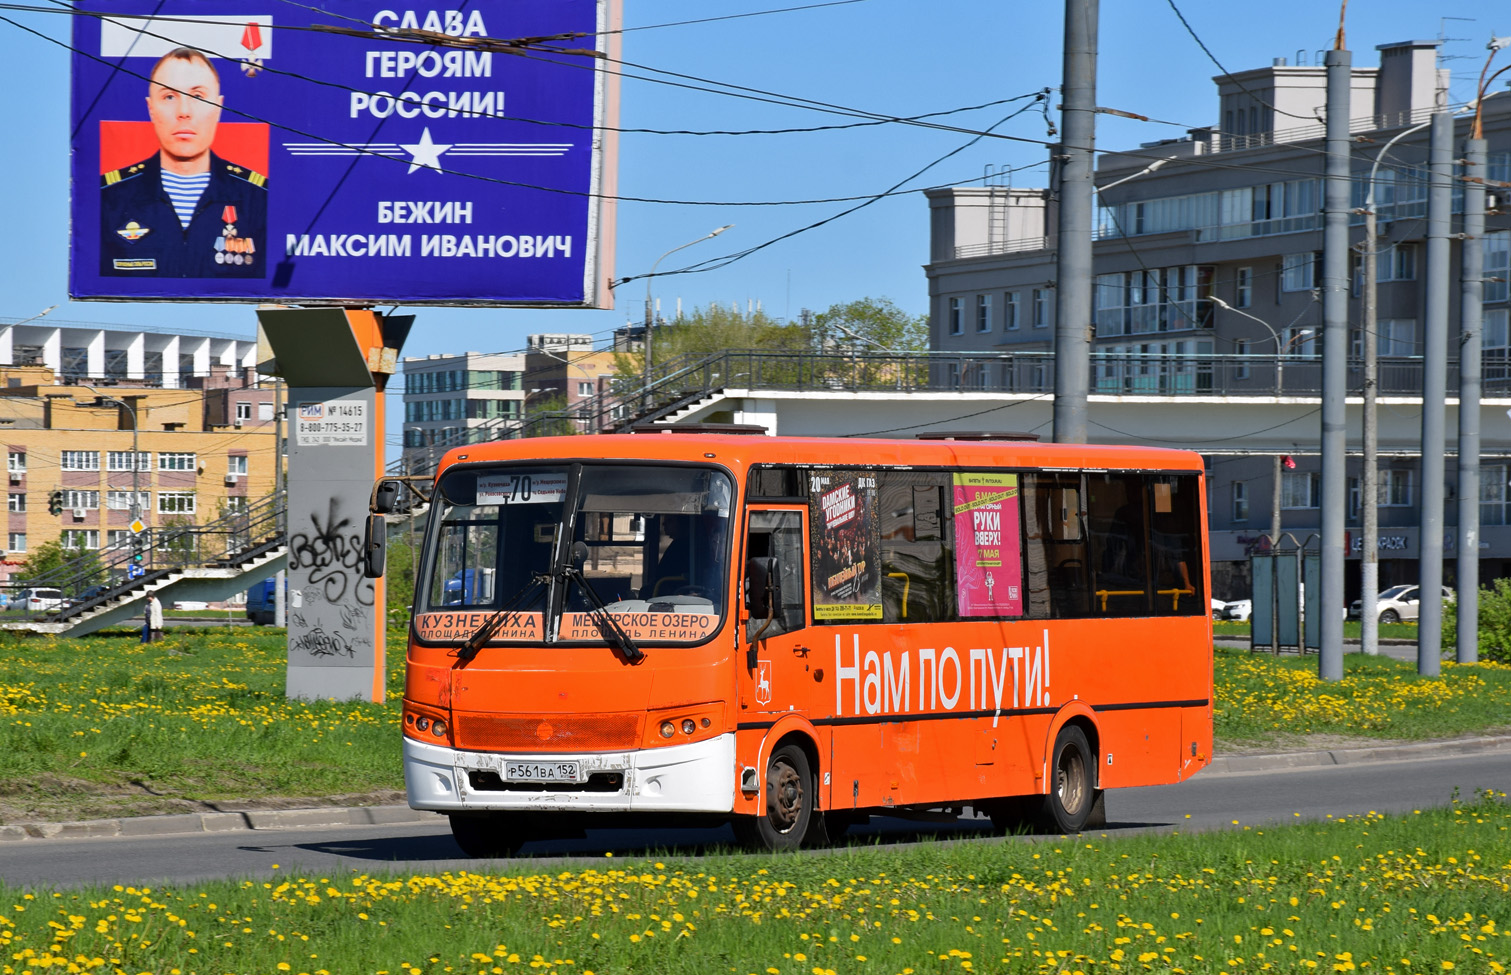 Nizhegorodskaya region, PAZ-320414-05 "Vektor" Nr. Р 561 ВА 152